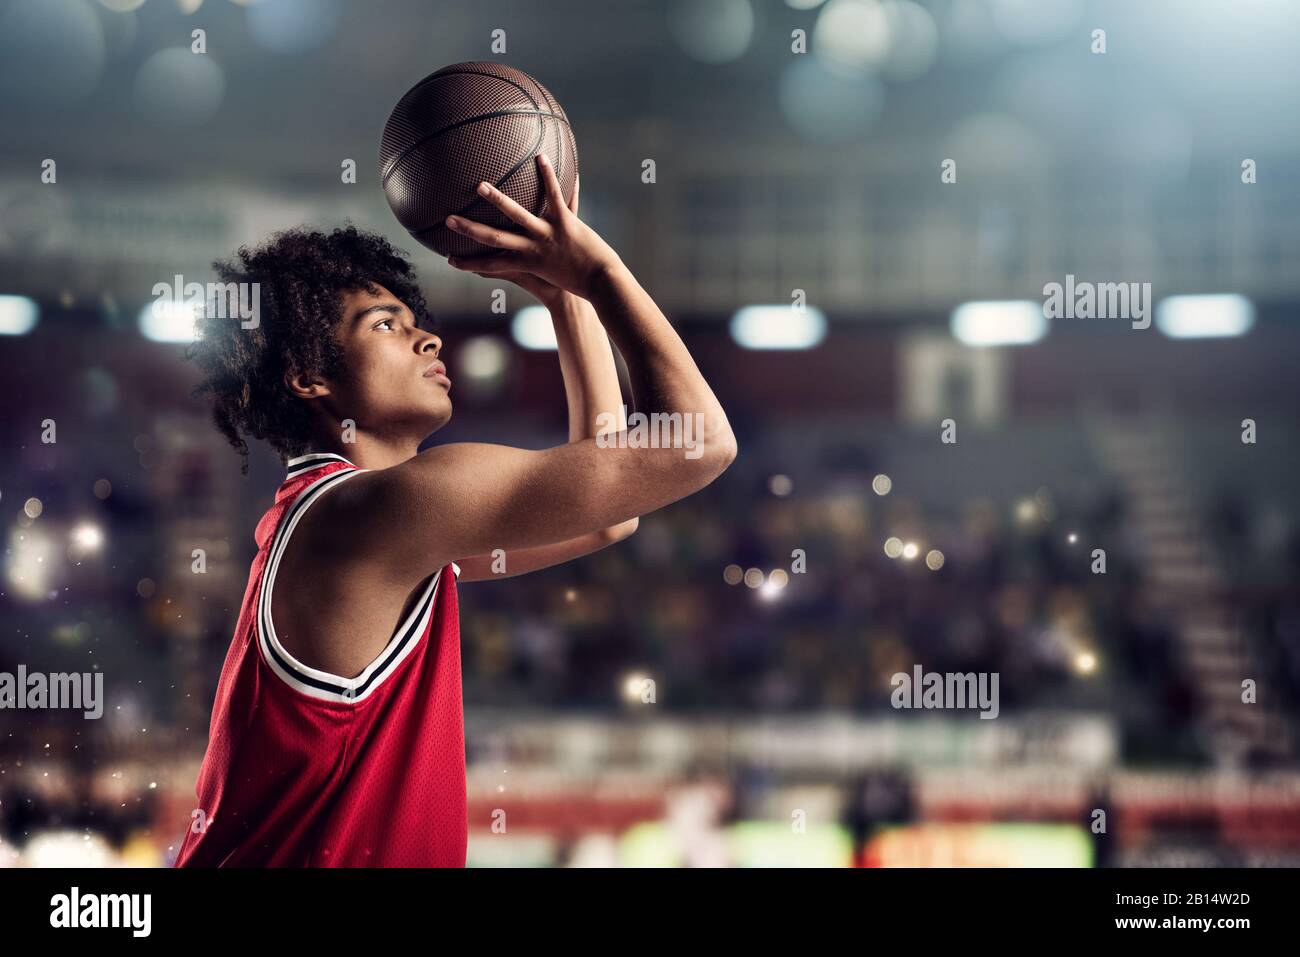 Le joueur de basket-ball jette le ballon dans le panier dans le stade plein de spectateurs Banque D'Images